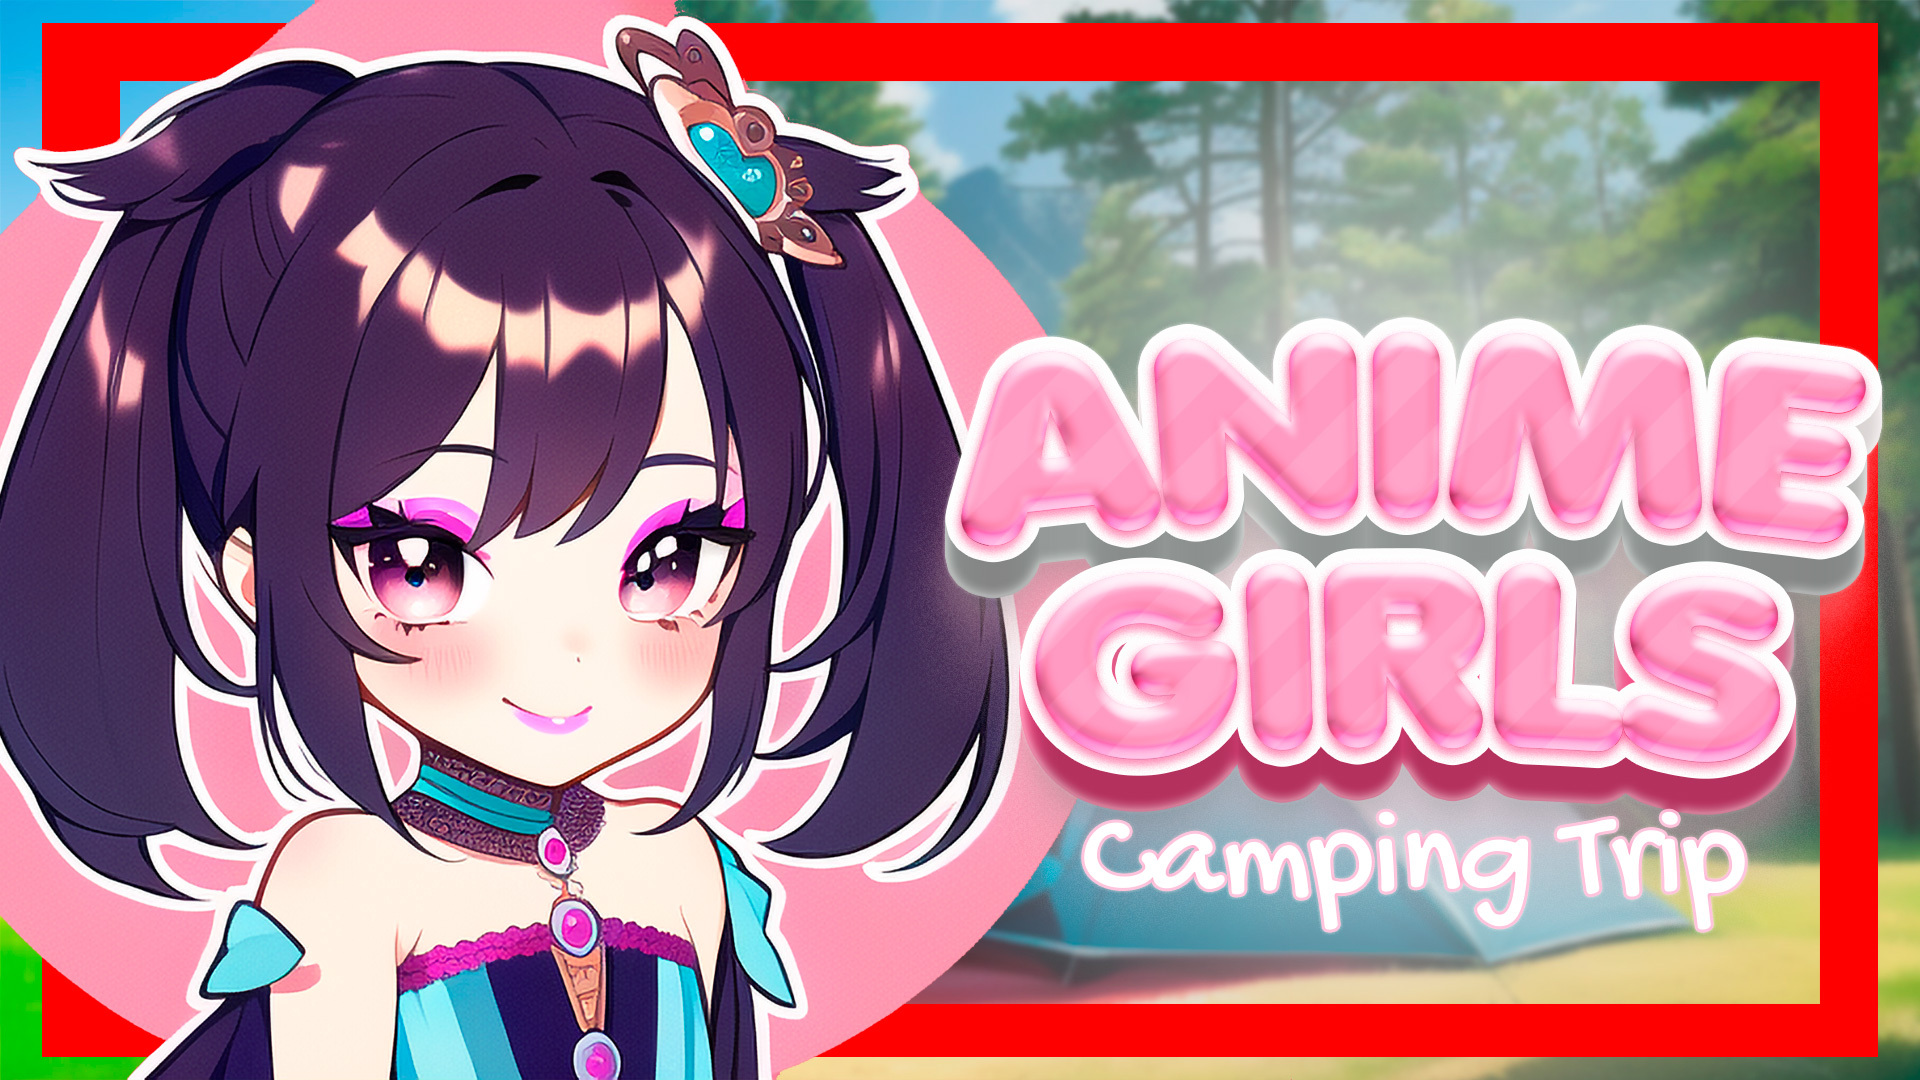 Anime Girls: Camping Trip